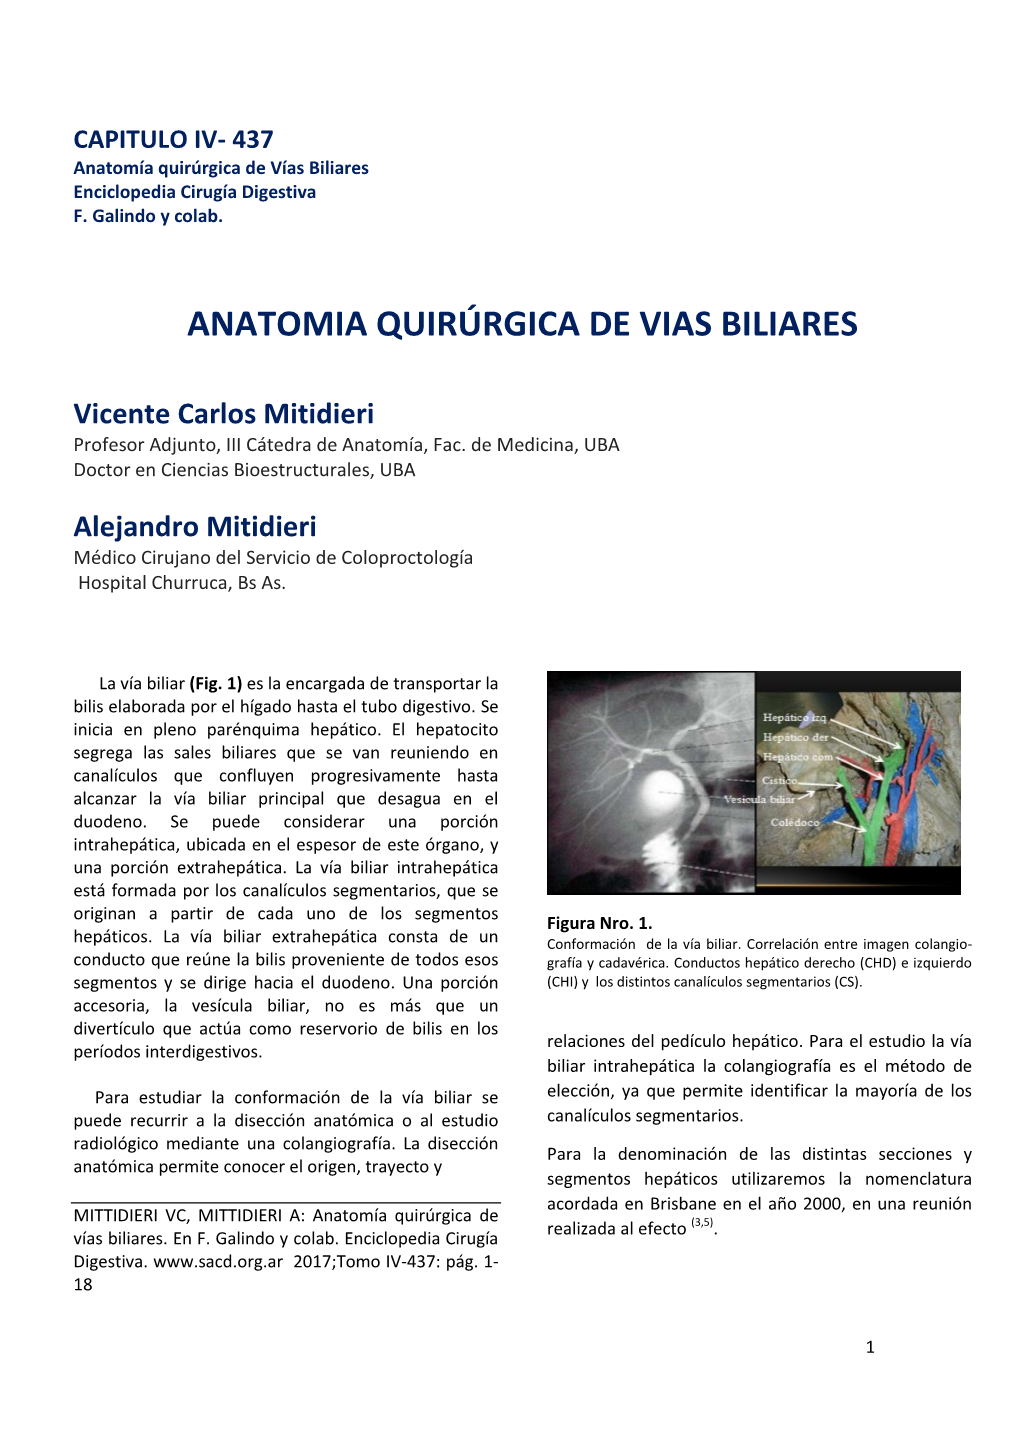 Anatomia Quirurgica De Las Vias Biliares